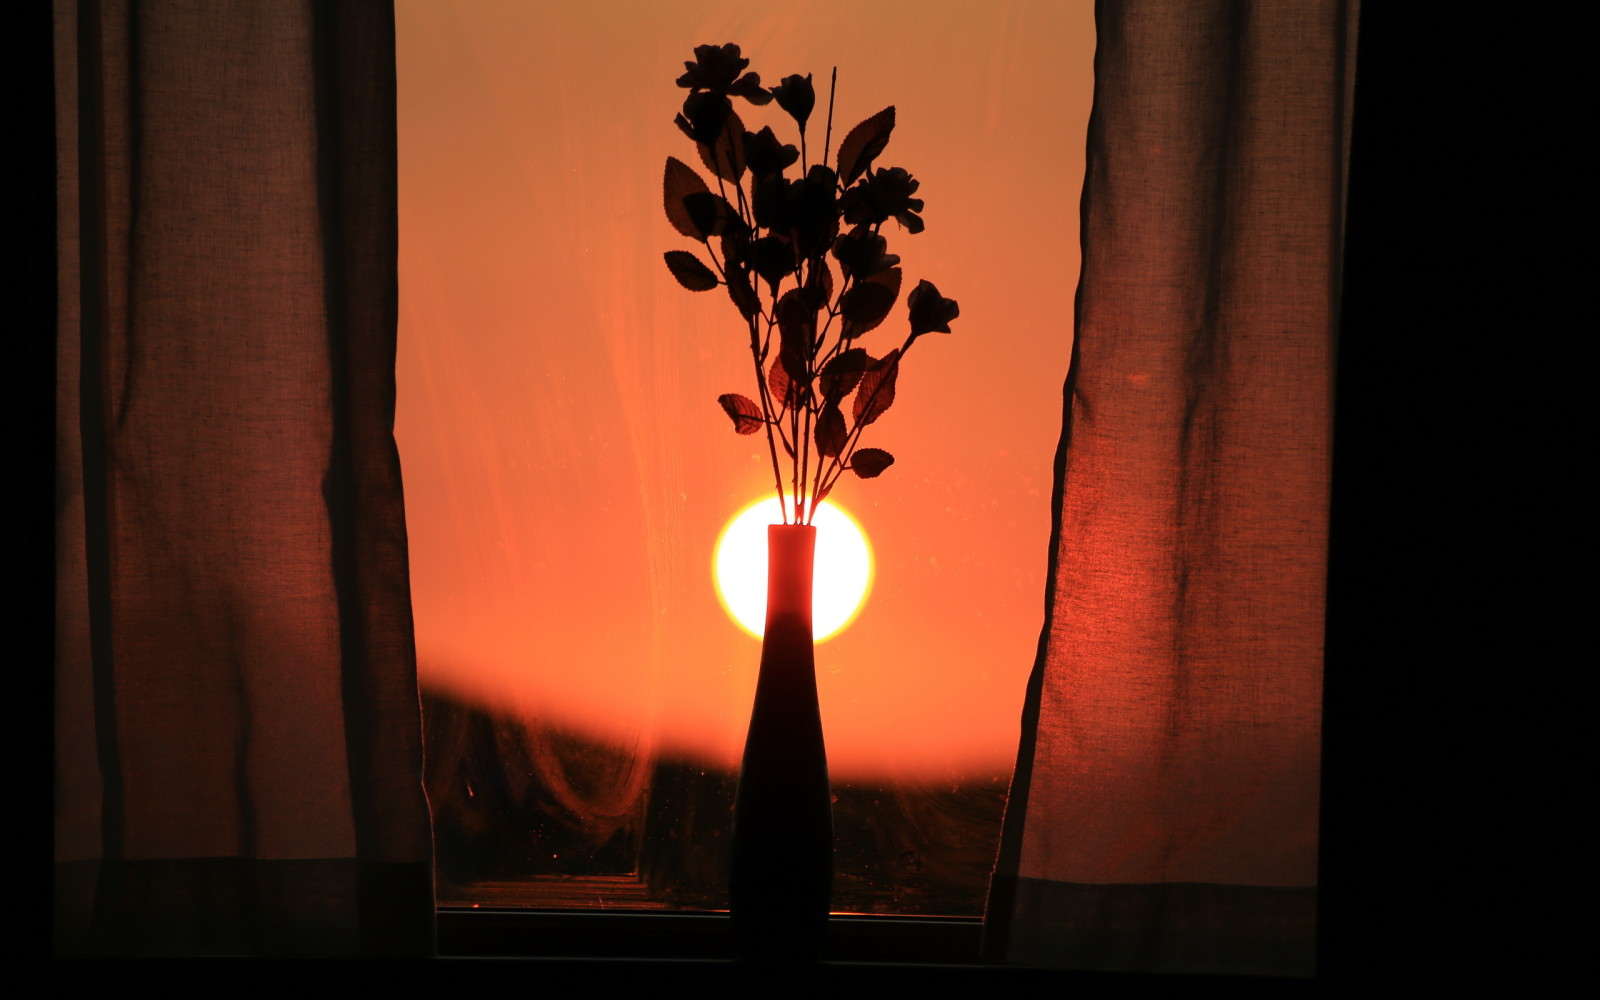 matahari terbenam, bunga-bunga, jendela